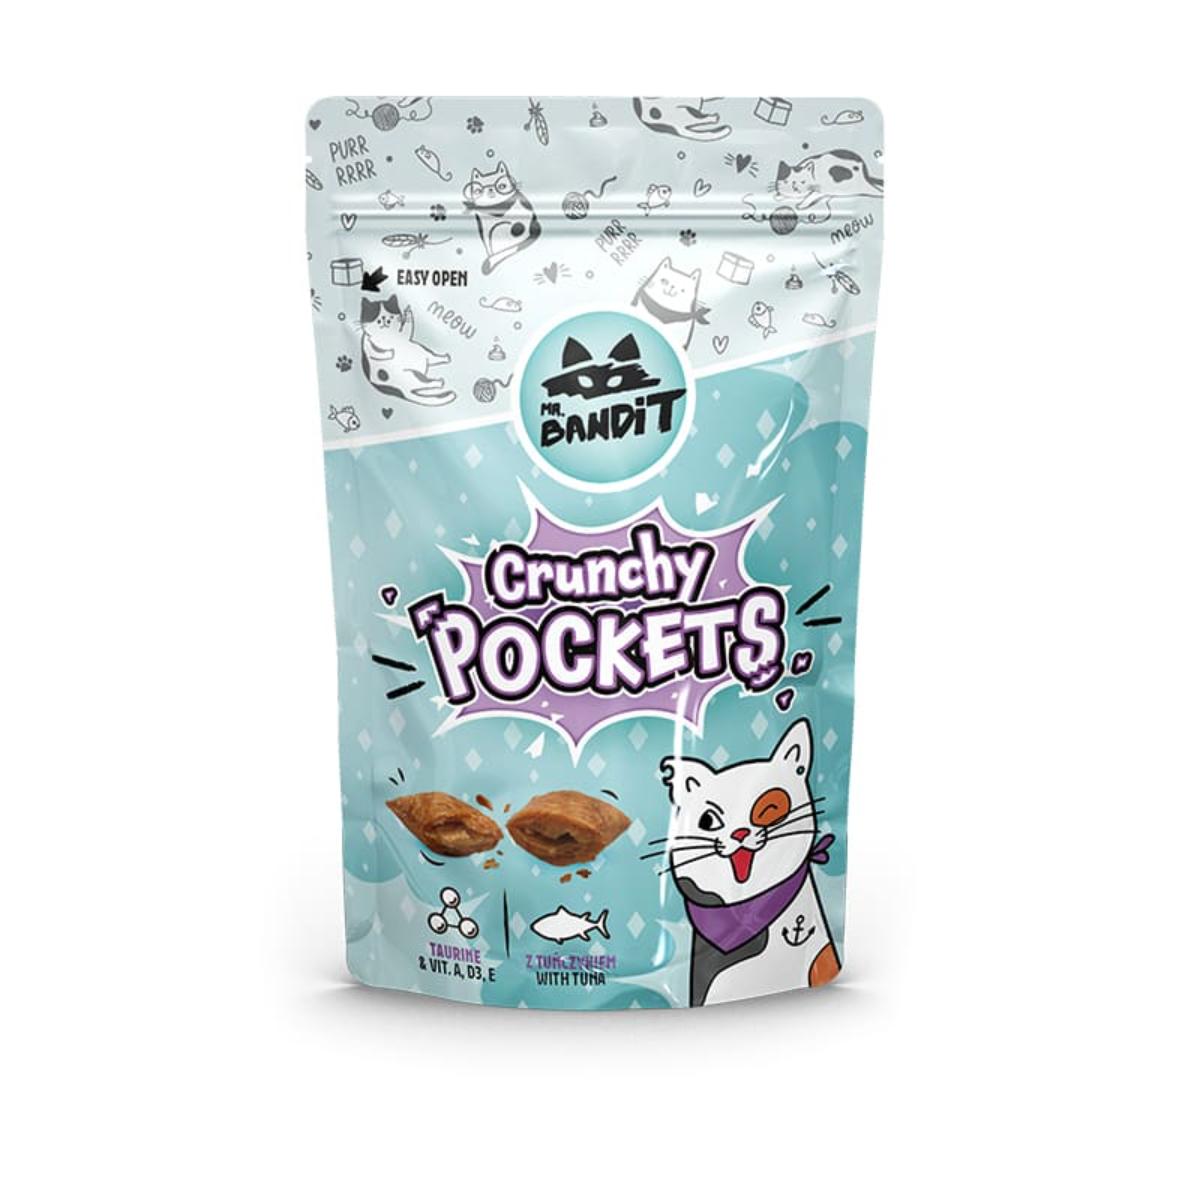 MR BANDIT Crunchy Pockets, Ton, punguță recompense pisici, 40g